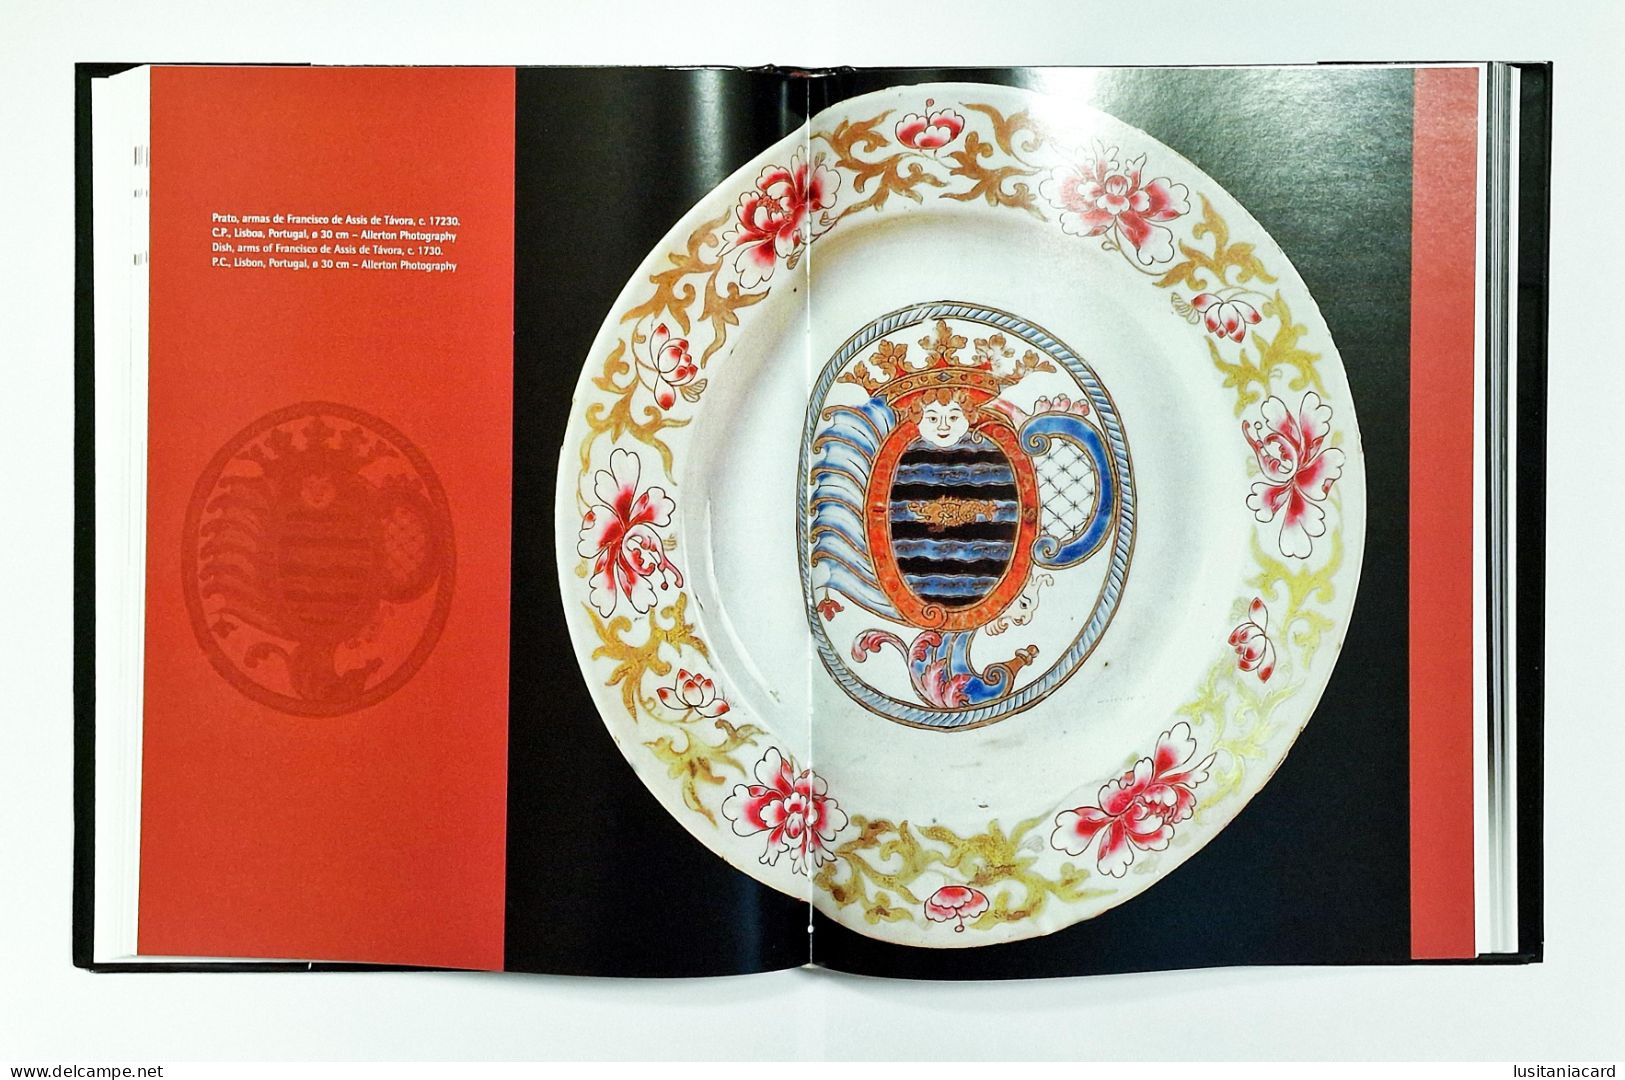 Portugal na Porcelana da China. 500 Anos de Comércio.( 4 VOLUMES) (Autor:A. Varela Santos -2007 a 2010)